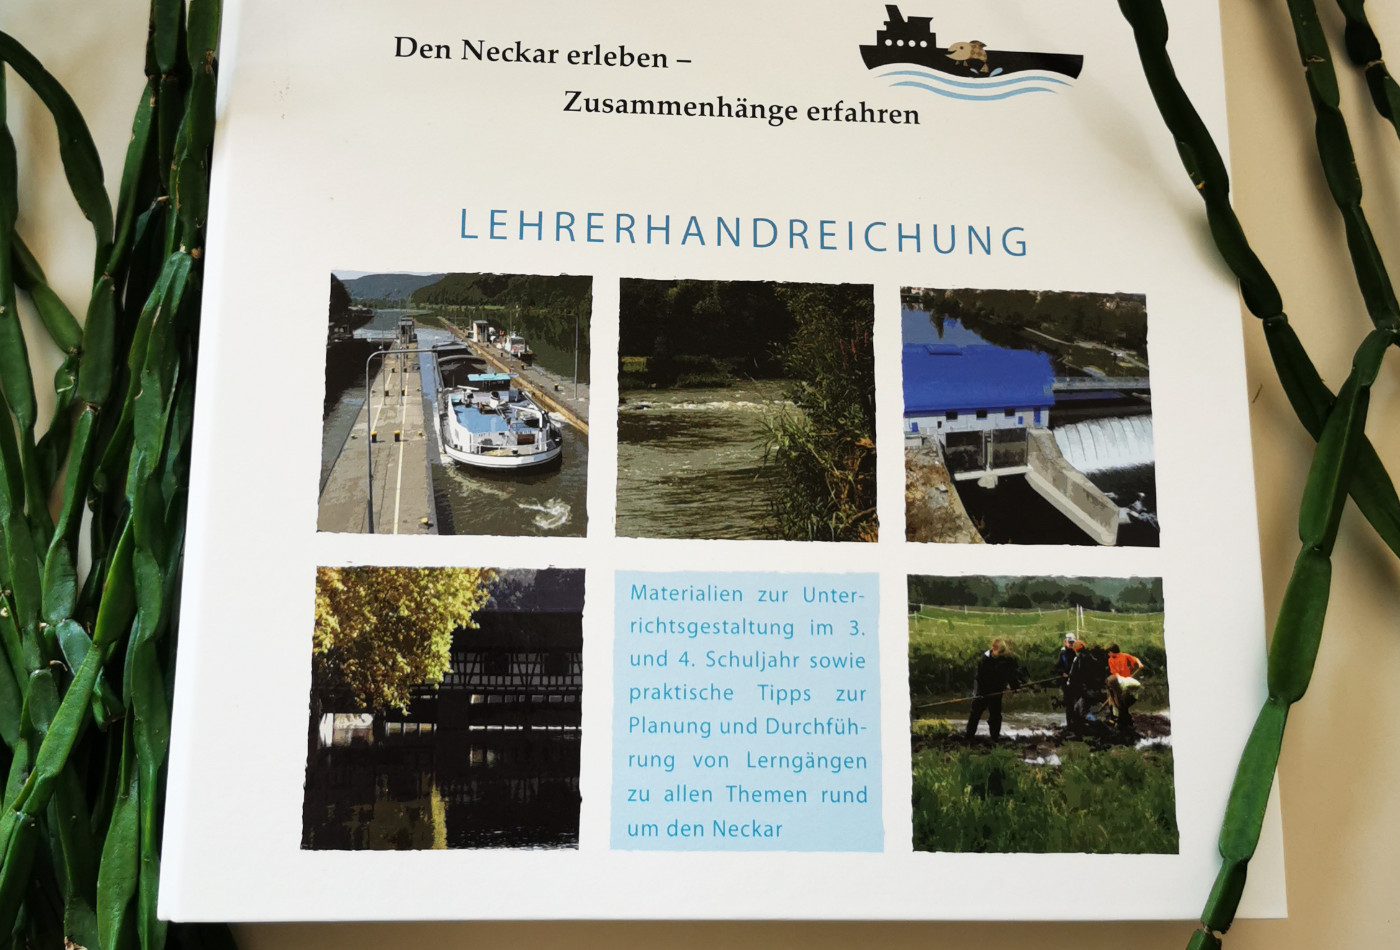 Abbildung von einer Lehrhandreichung zum Thema Fische und Schiffe im Neckar.